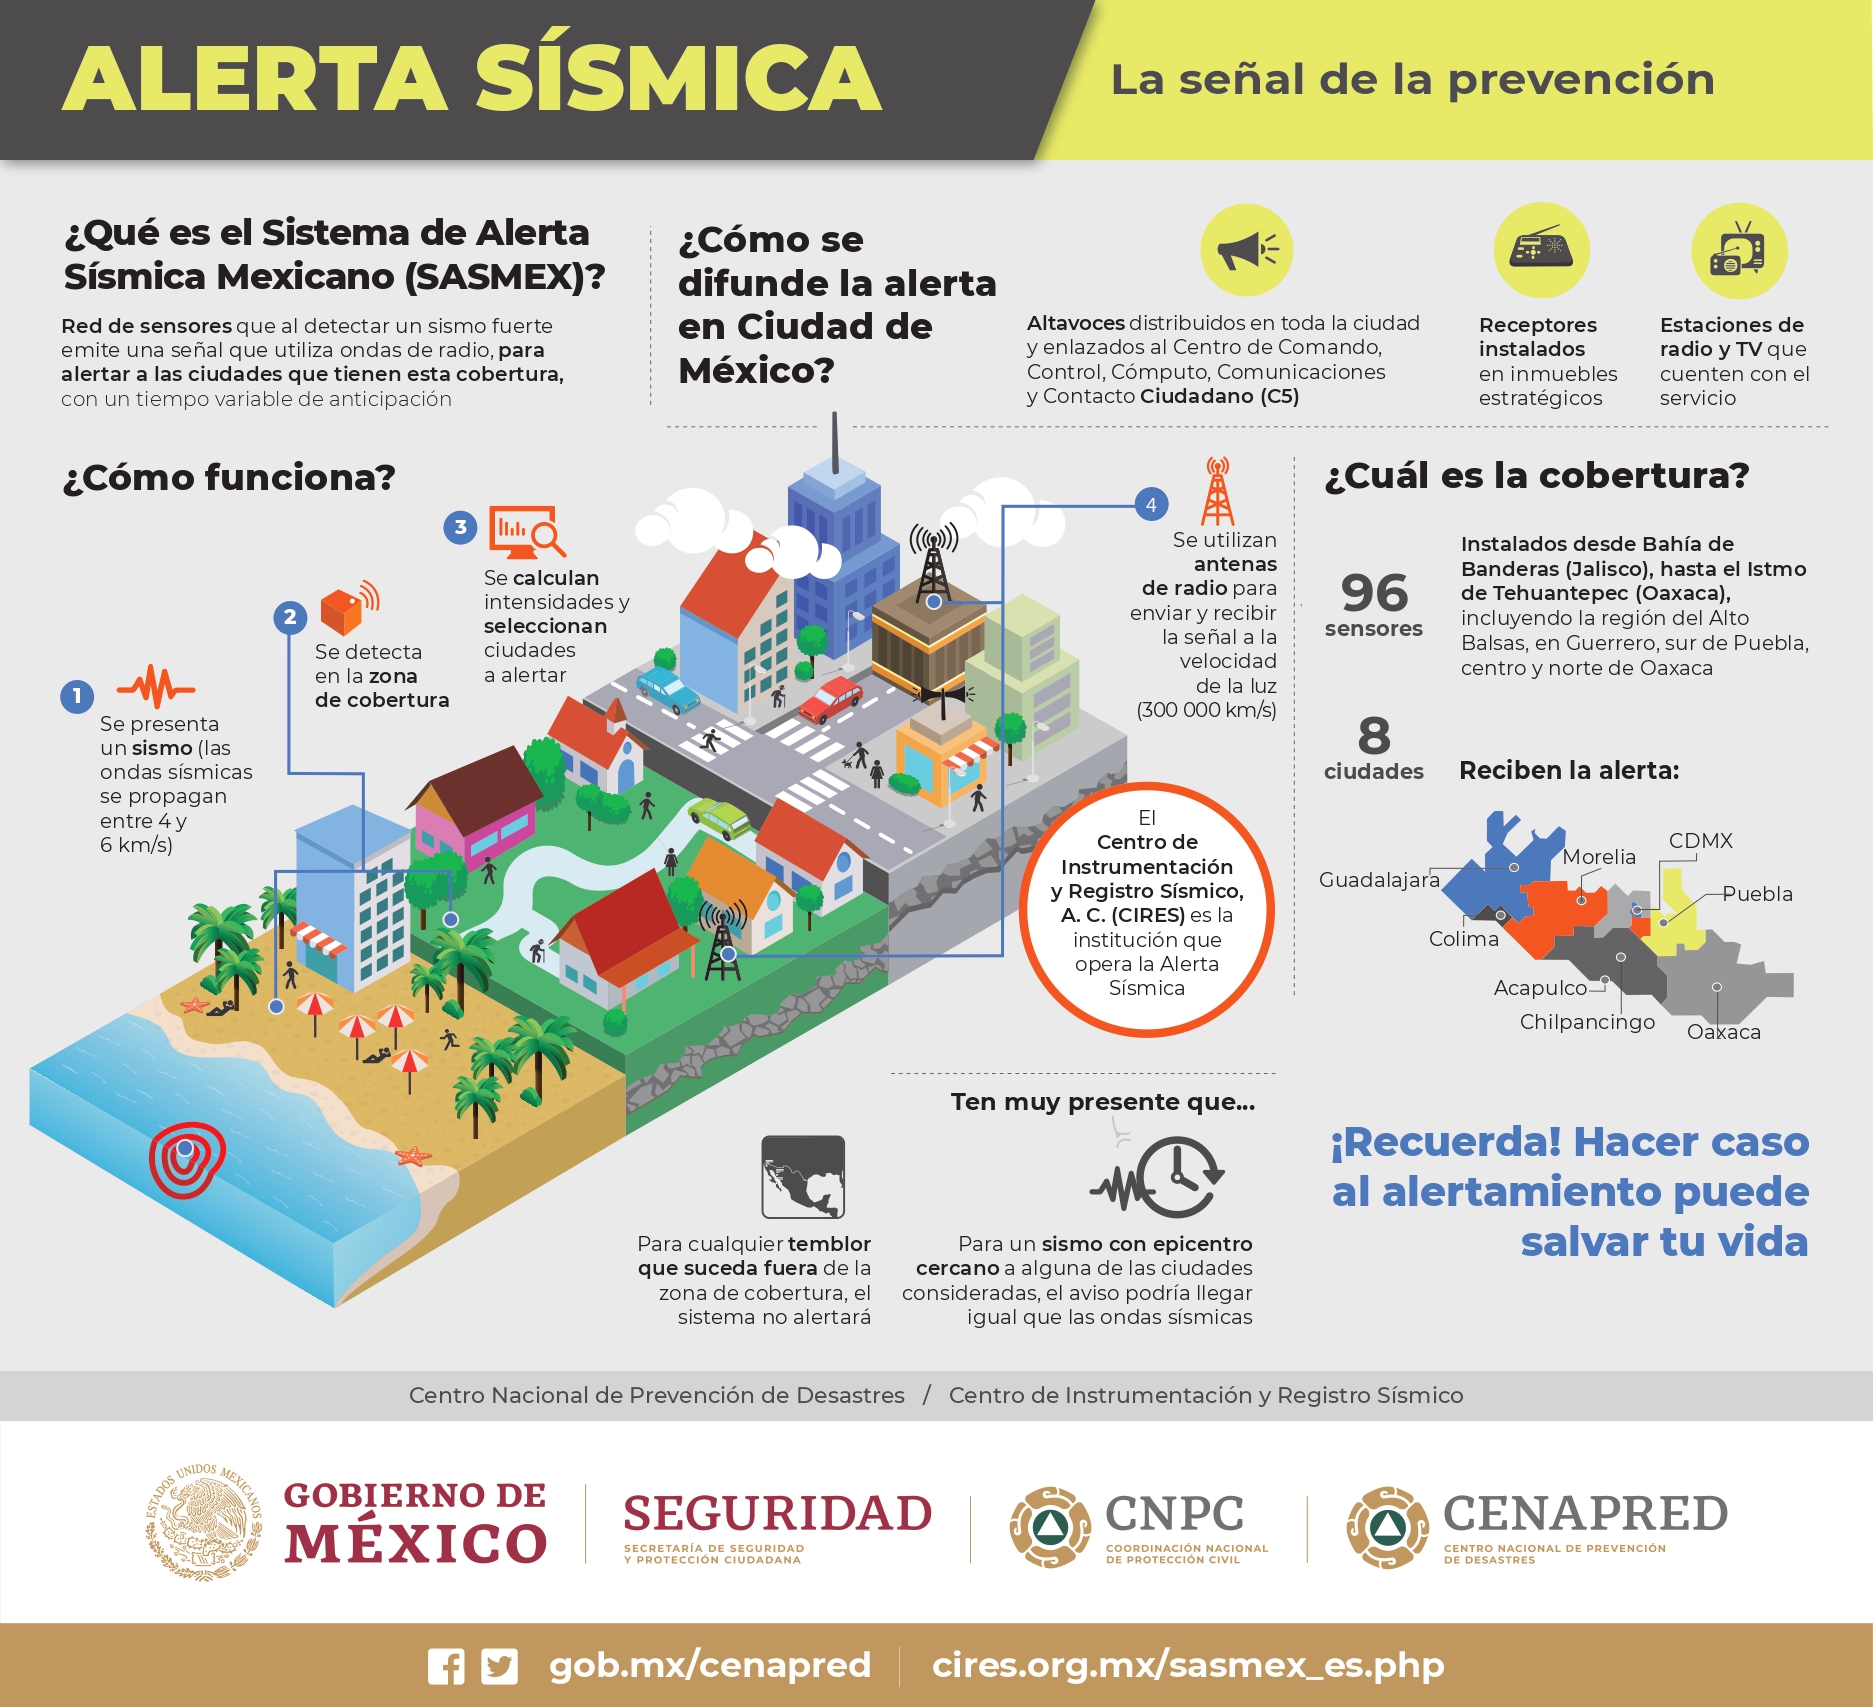 El Servicio Sismológico Nacional toma en cuenta la fecha y hora; magnitud; profundidad; y ubicación geográfica del epicentro del sismo para emitir la alerta sísmica. FOTO: Gobierno de México